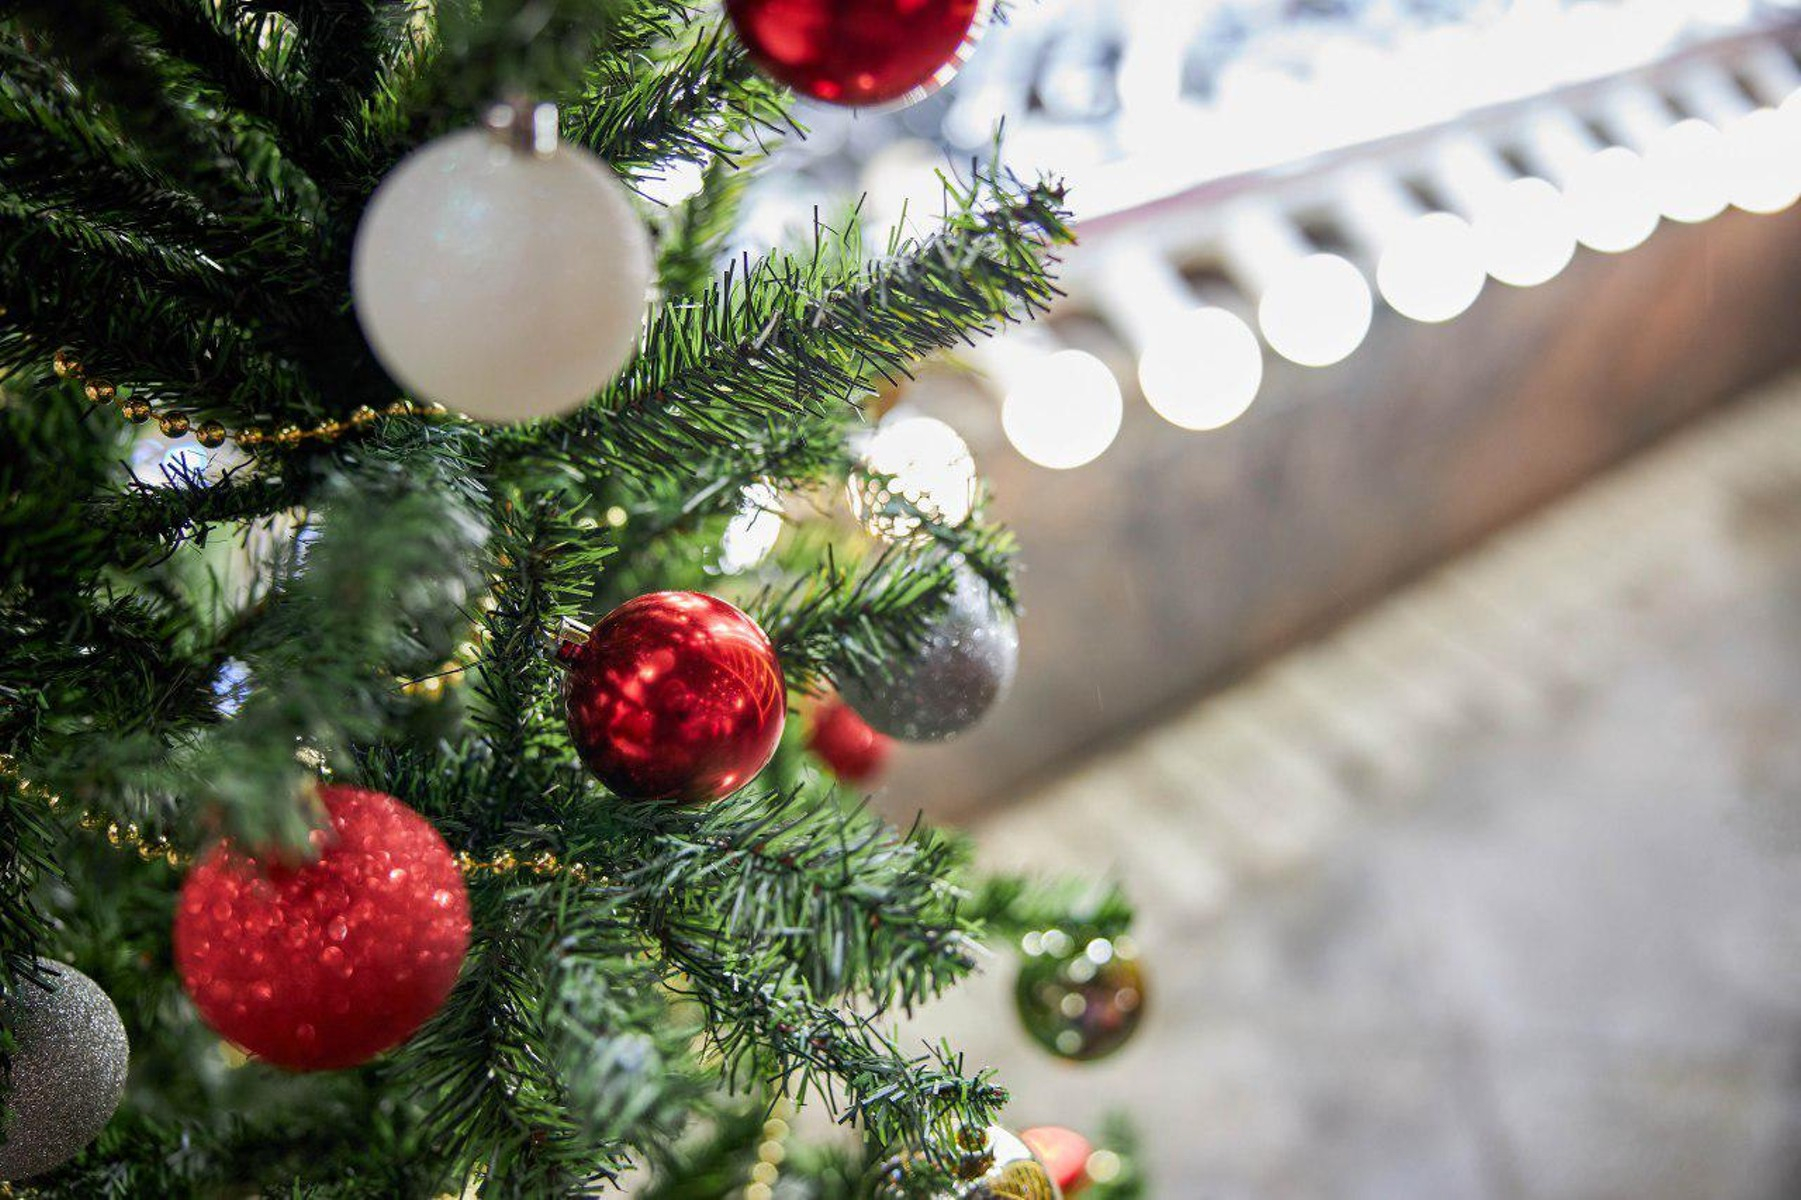 В Авдеевке разбили игрушки и гирлянду на новогодней елке